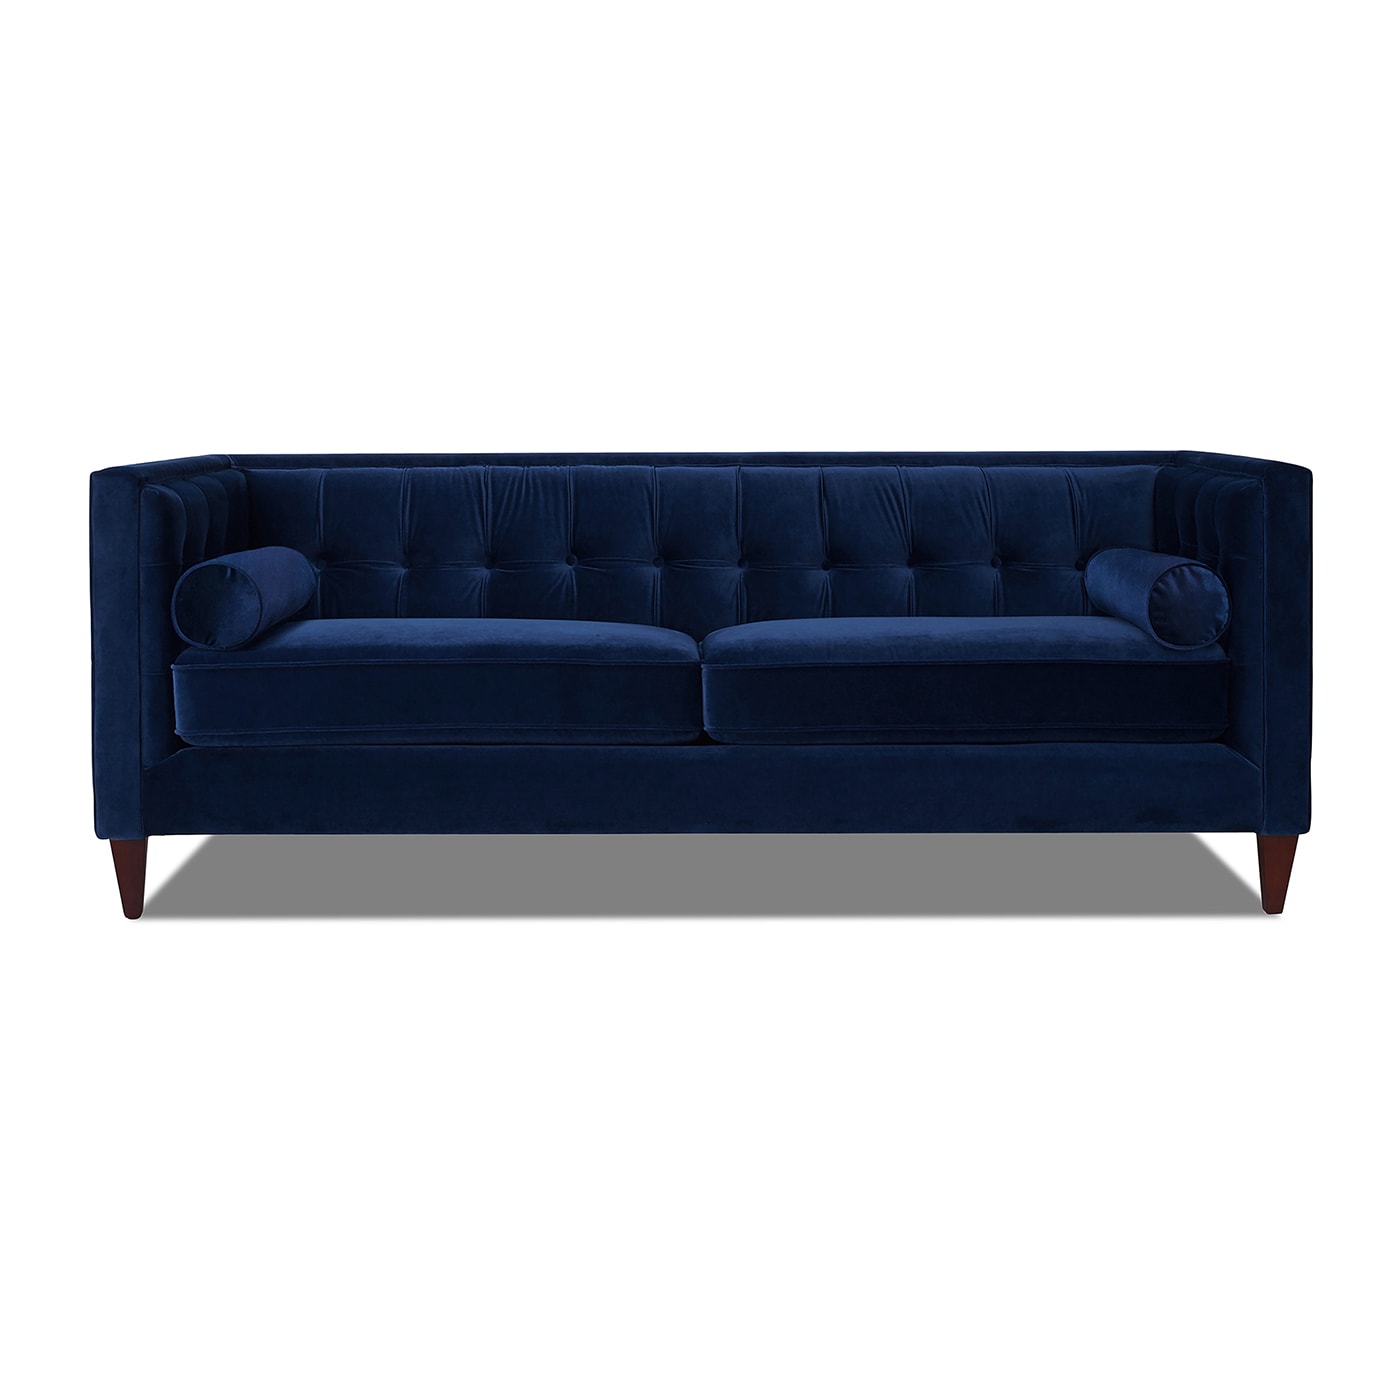 Jack 84-in Glam Navy Blue Velvet 3-seater Sofa | - Jennifer Taylor Home 8403-3-859